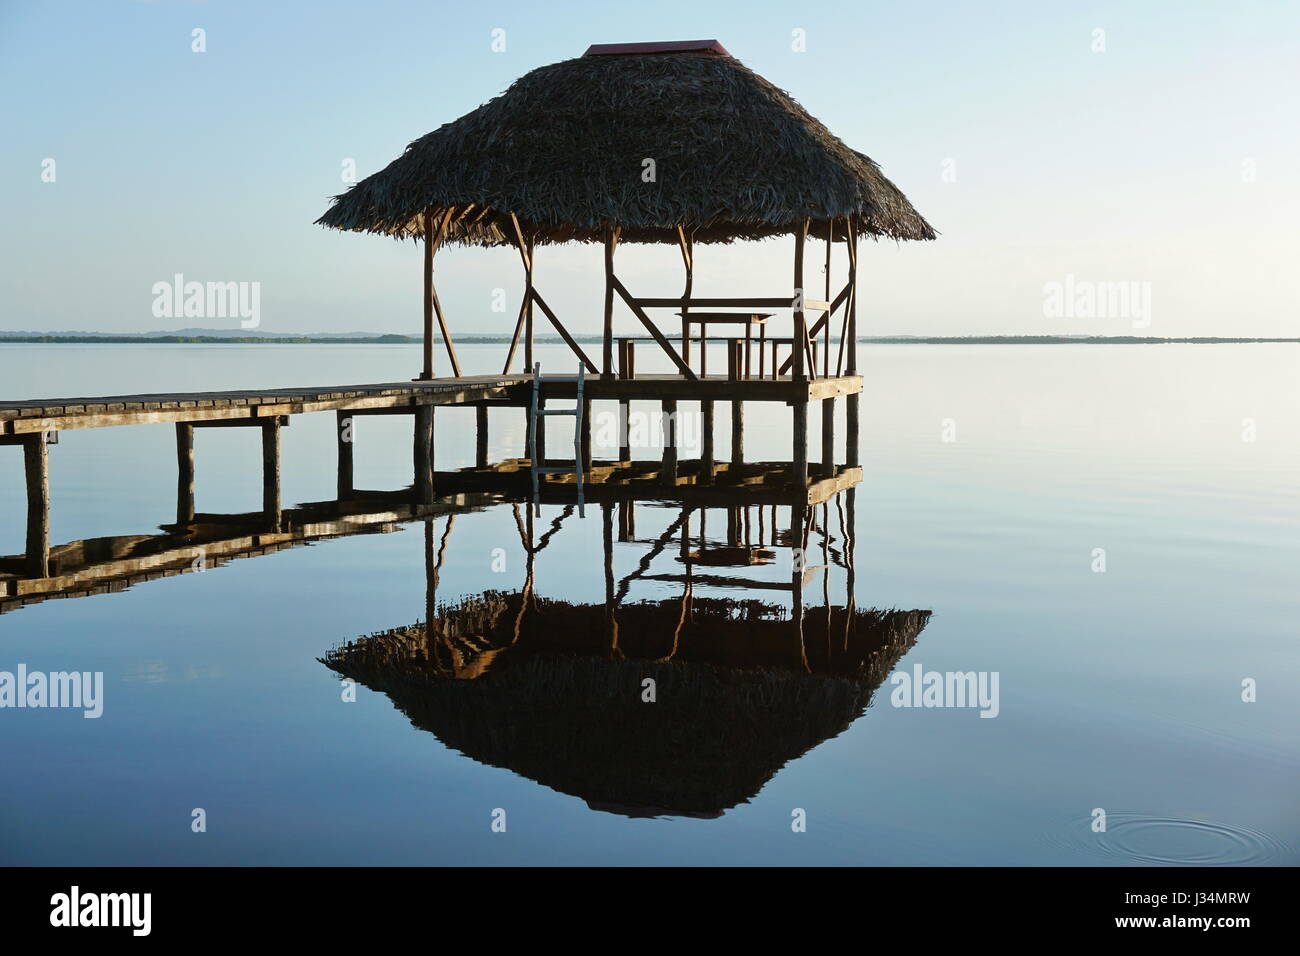 Capanna con il tetto di paglia overwater e la sua riflessione su una calma della superficie dell'acqua, luce di sunrise, scenario naturale, il mare dei Caraibi, Panama America Centrale Foto Stock